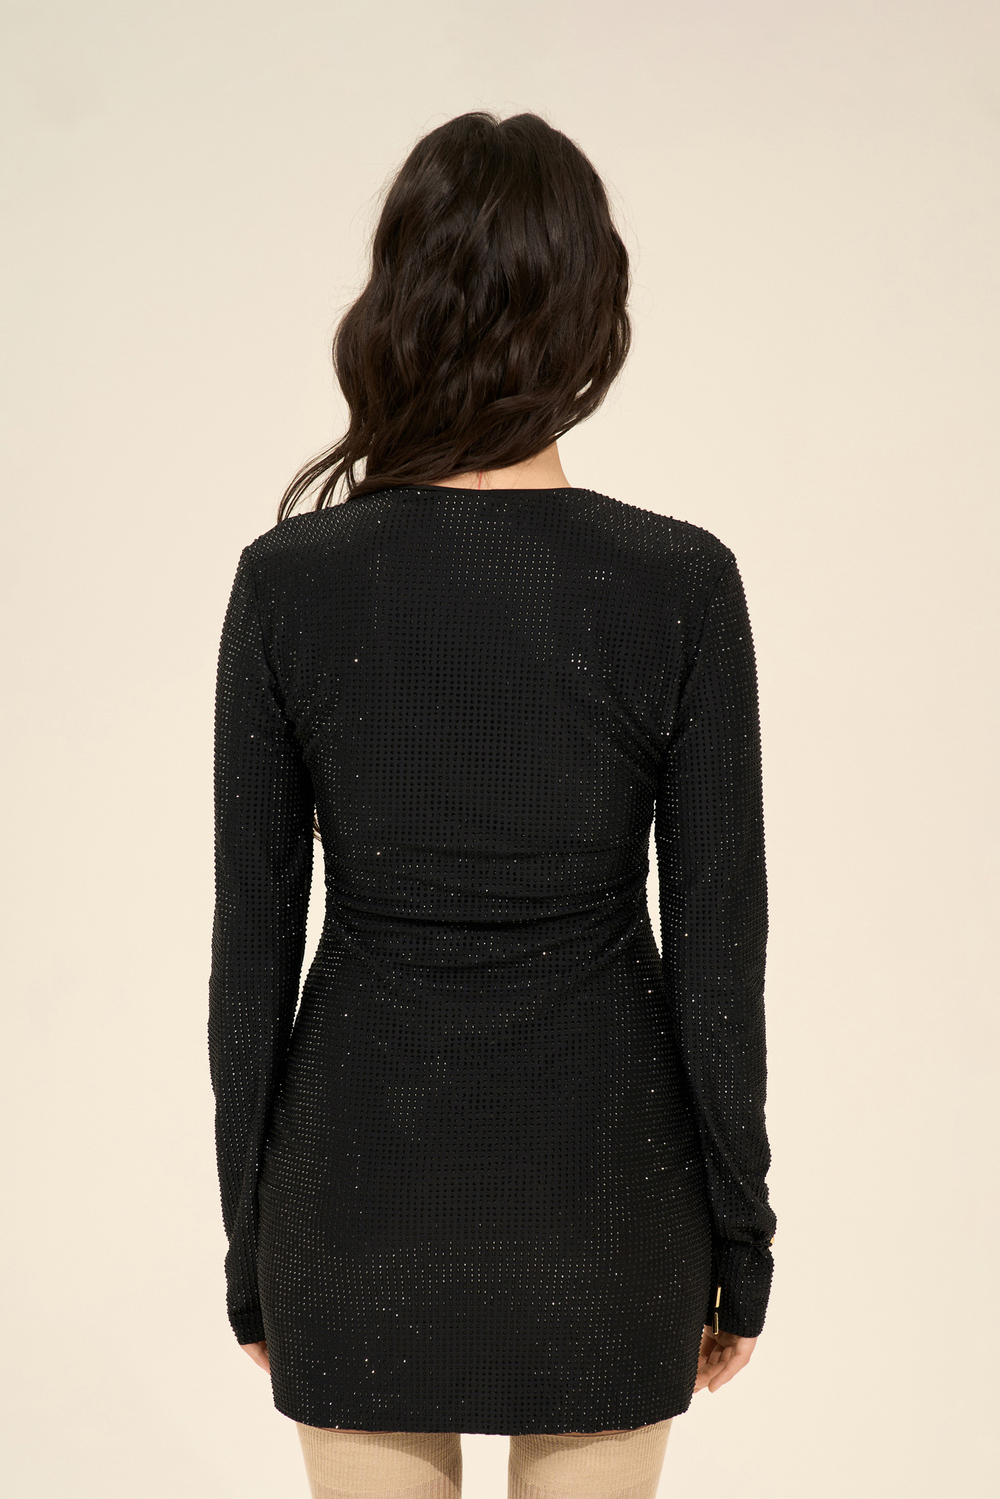 Платье мини из страз (Мини-диско), черные стразы